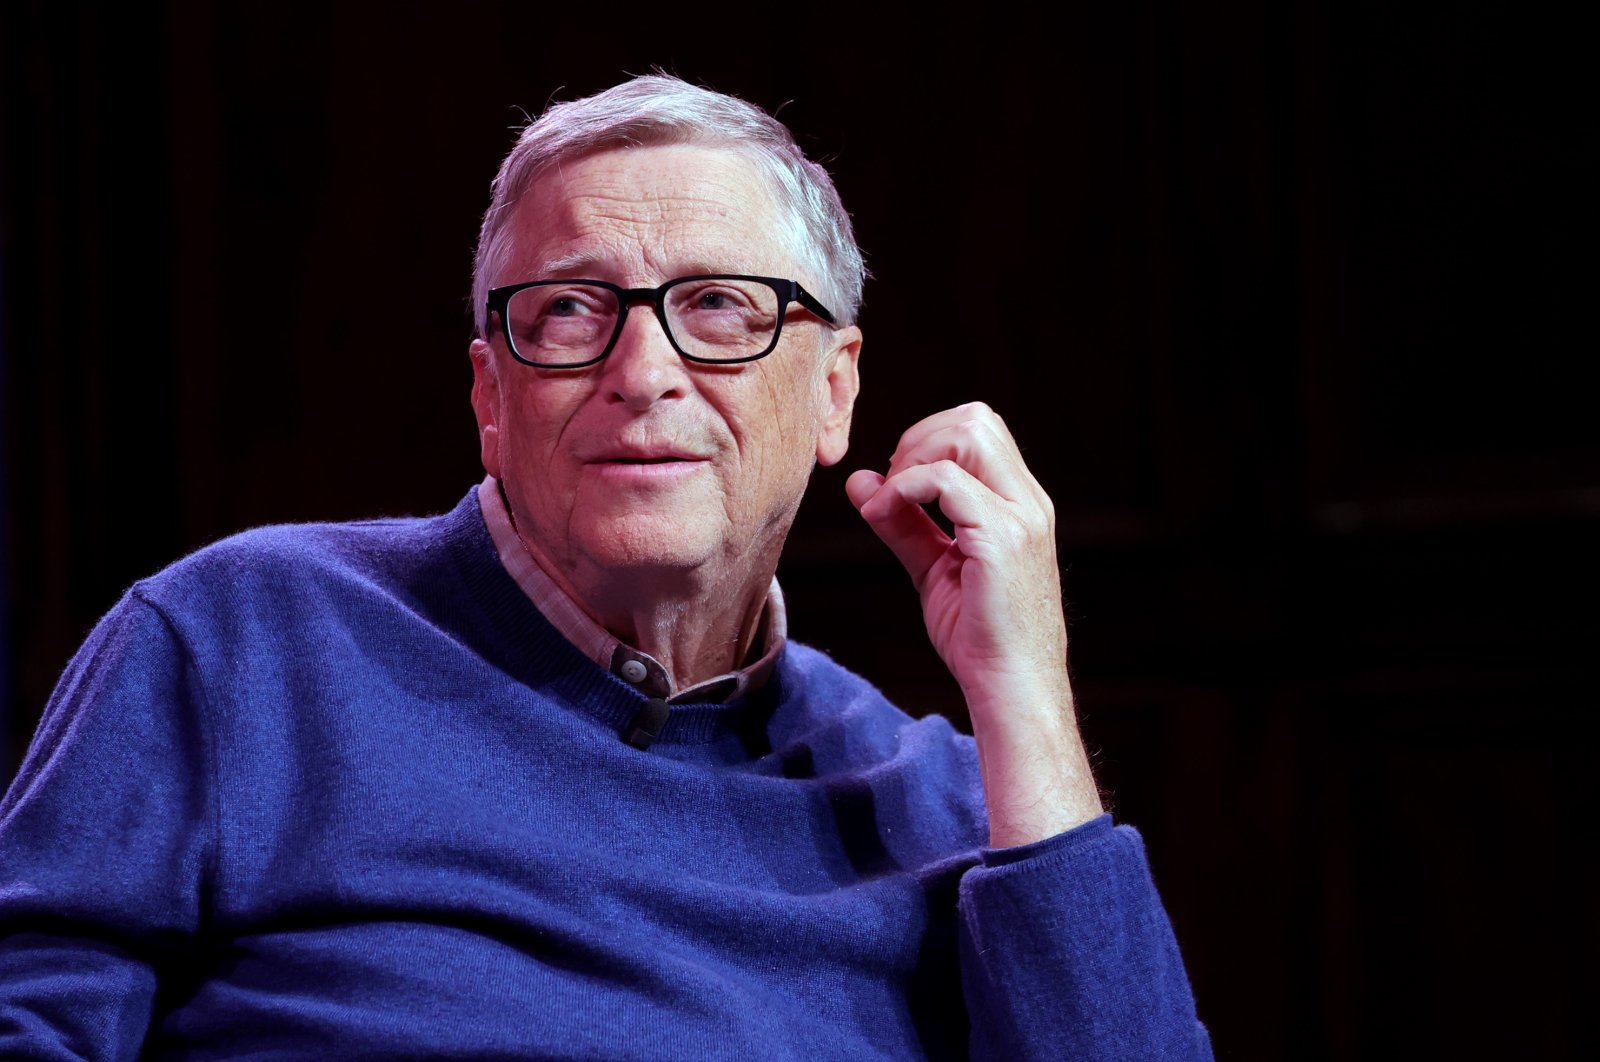 Melacak orang: Bill Gates mengecam teori konspirasi COVID-19